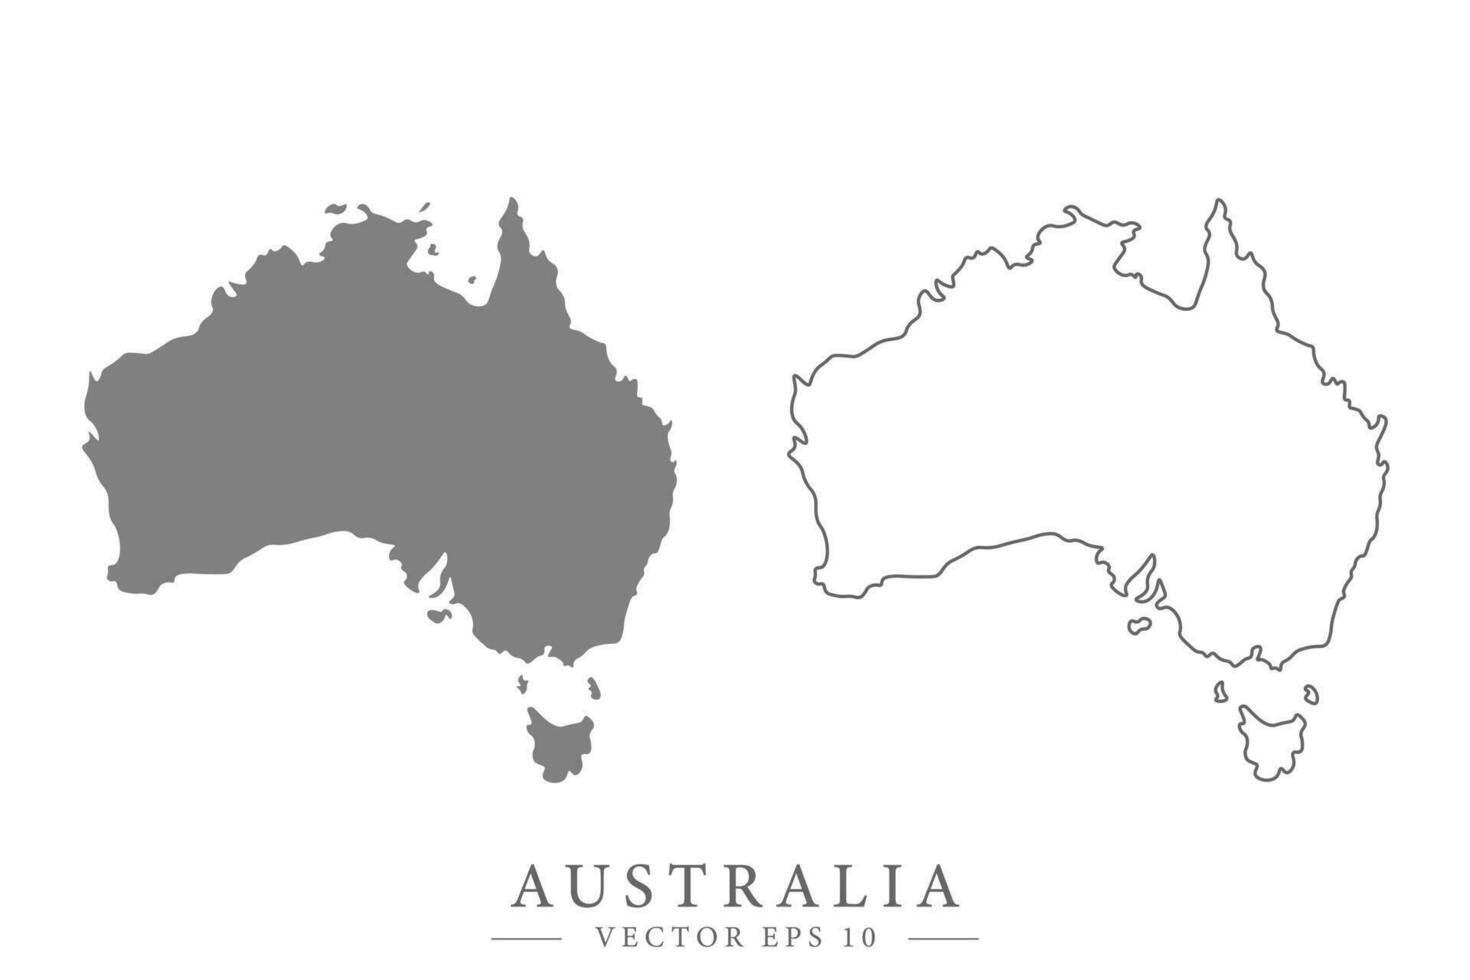 australiano piatto o linea carta geografica. isolato vettore illustrazione.